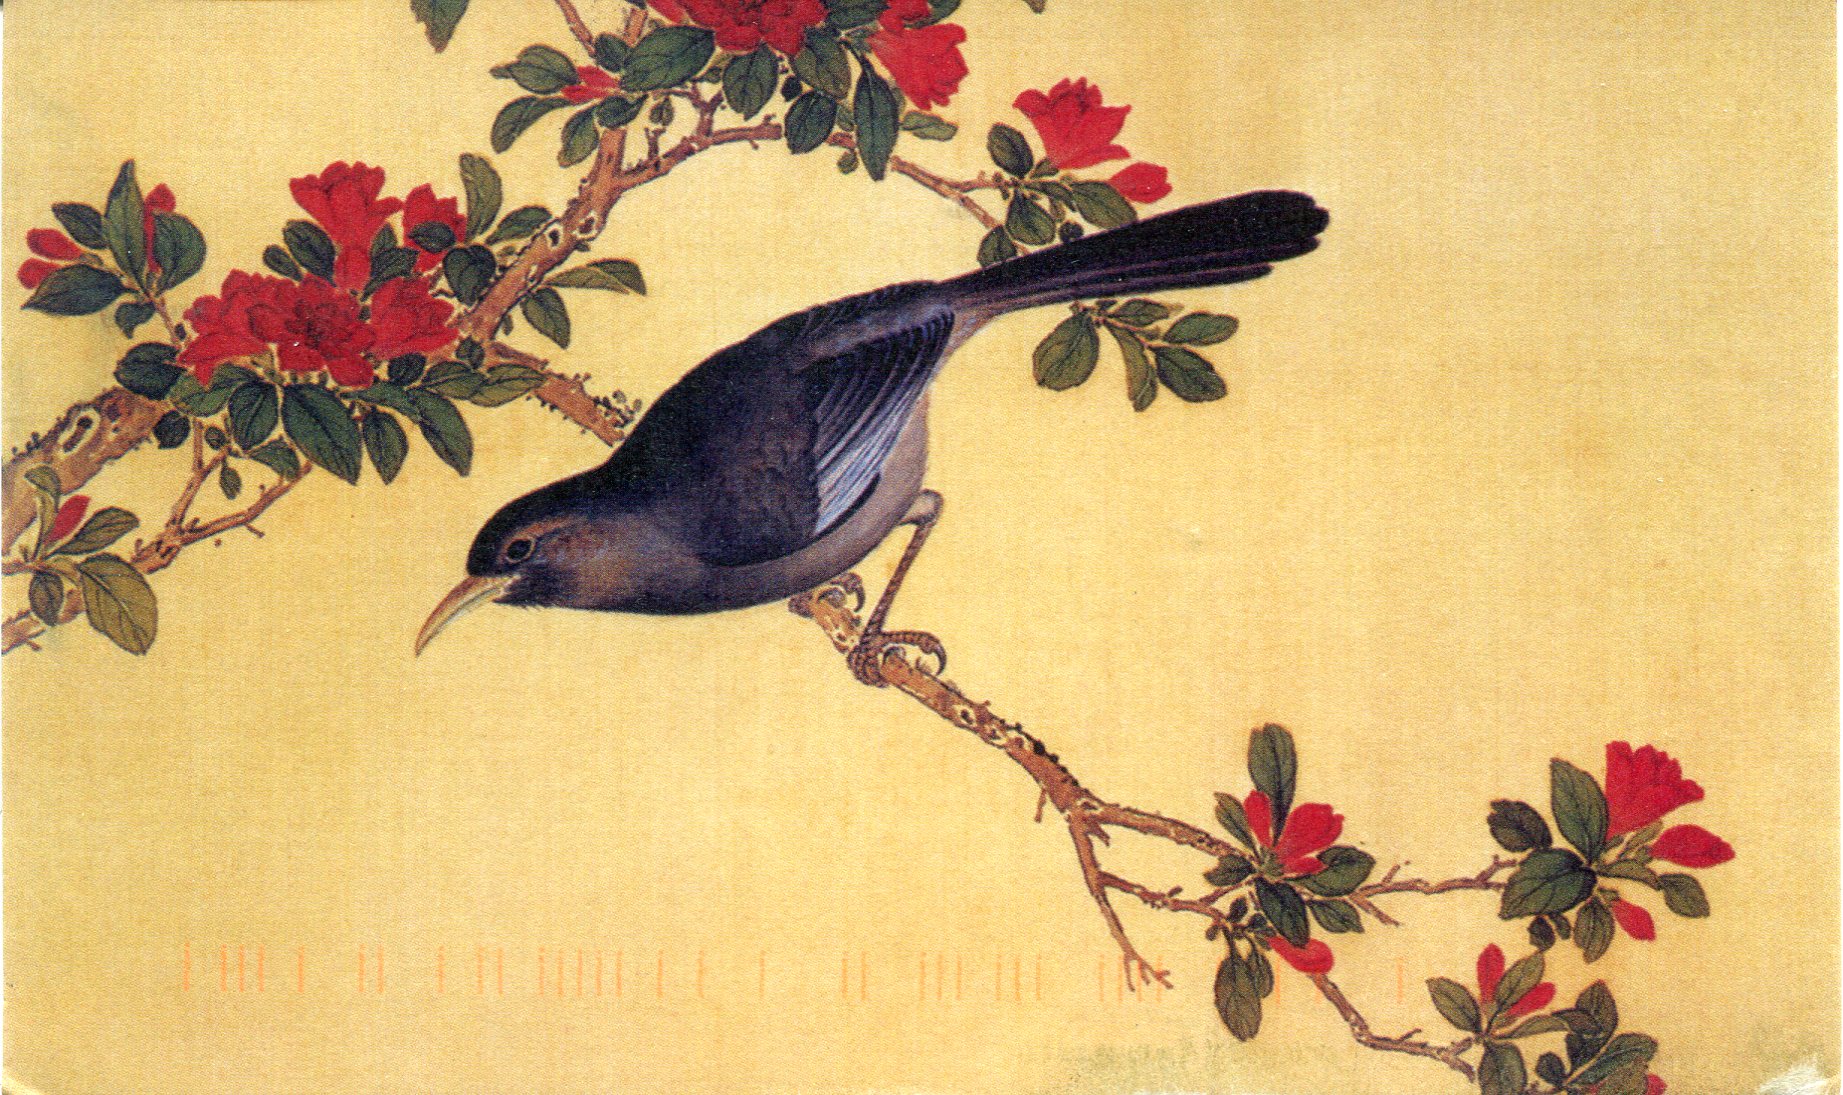 16 птичек на китайском